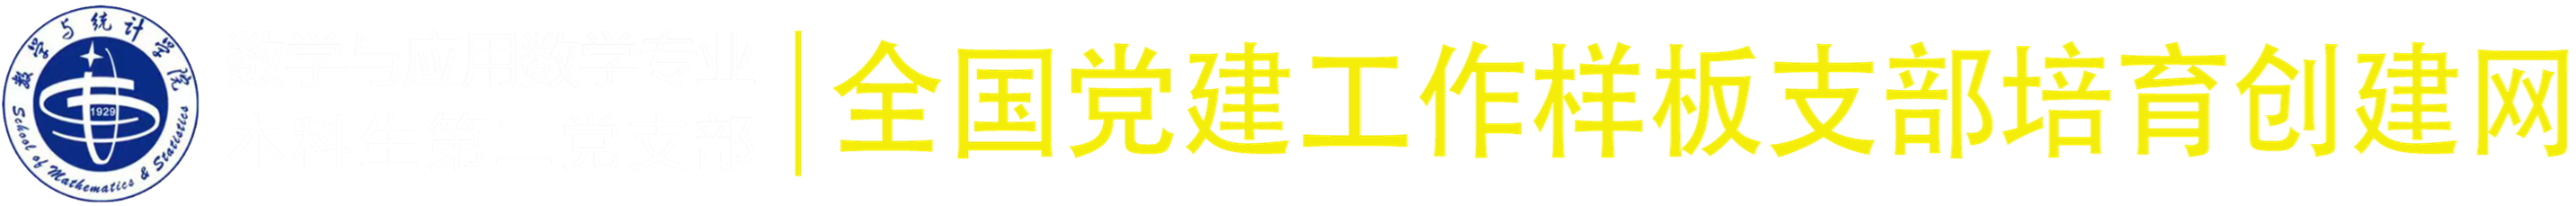 专栏logo